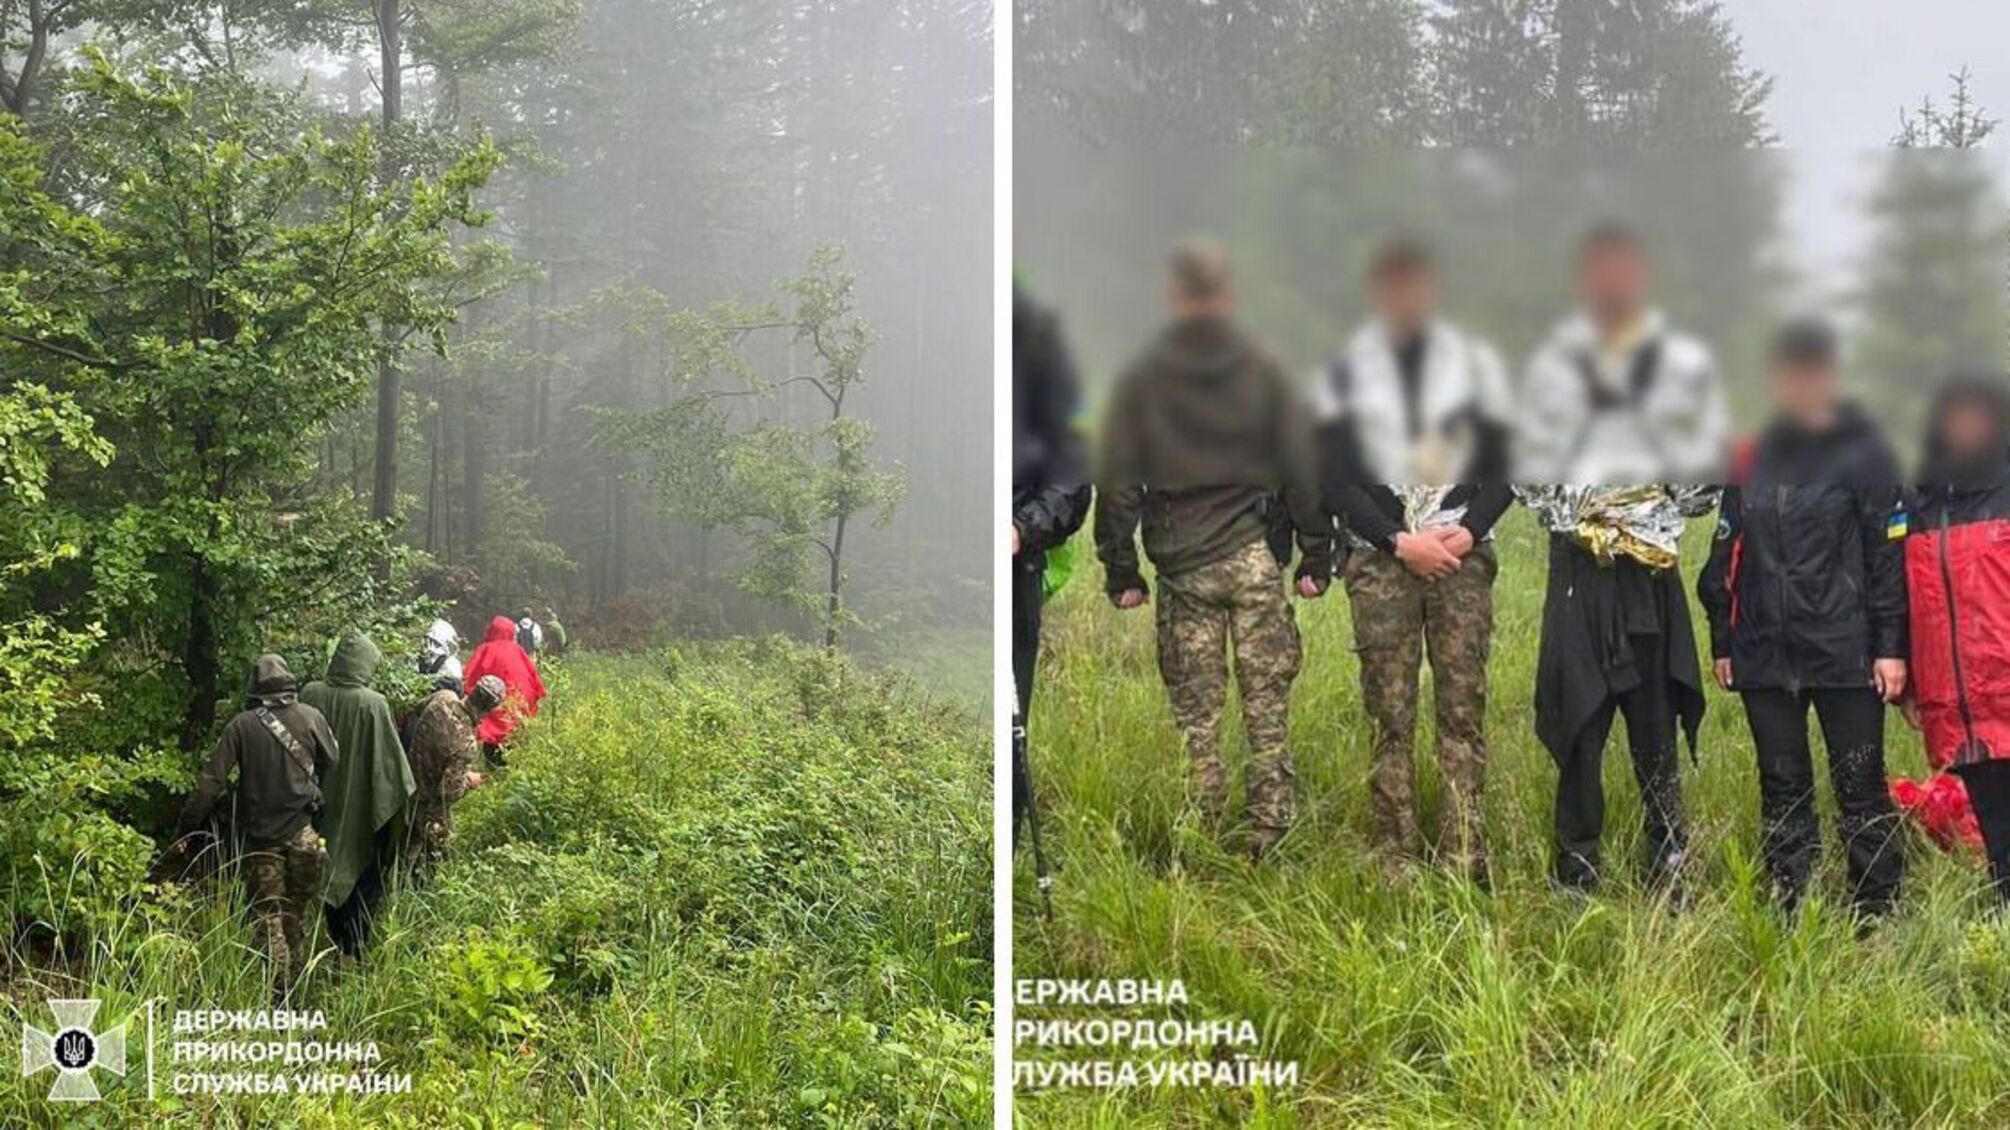 Уклоннисты заблудились в горах и просили о помощи спасателей